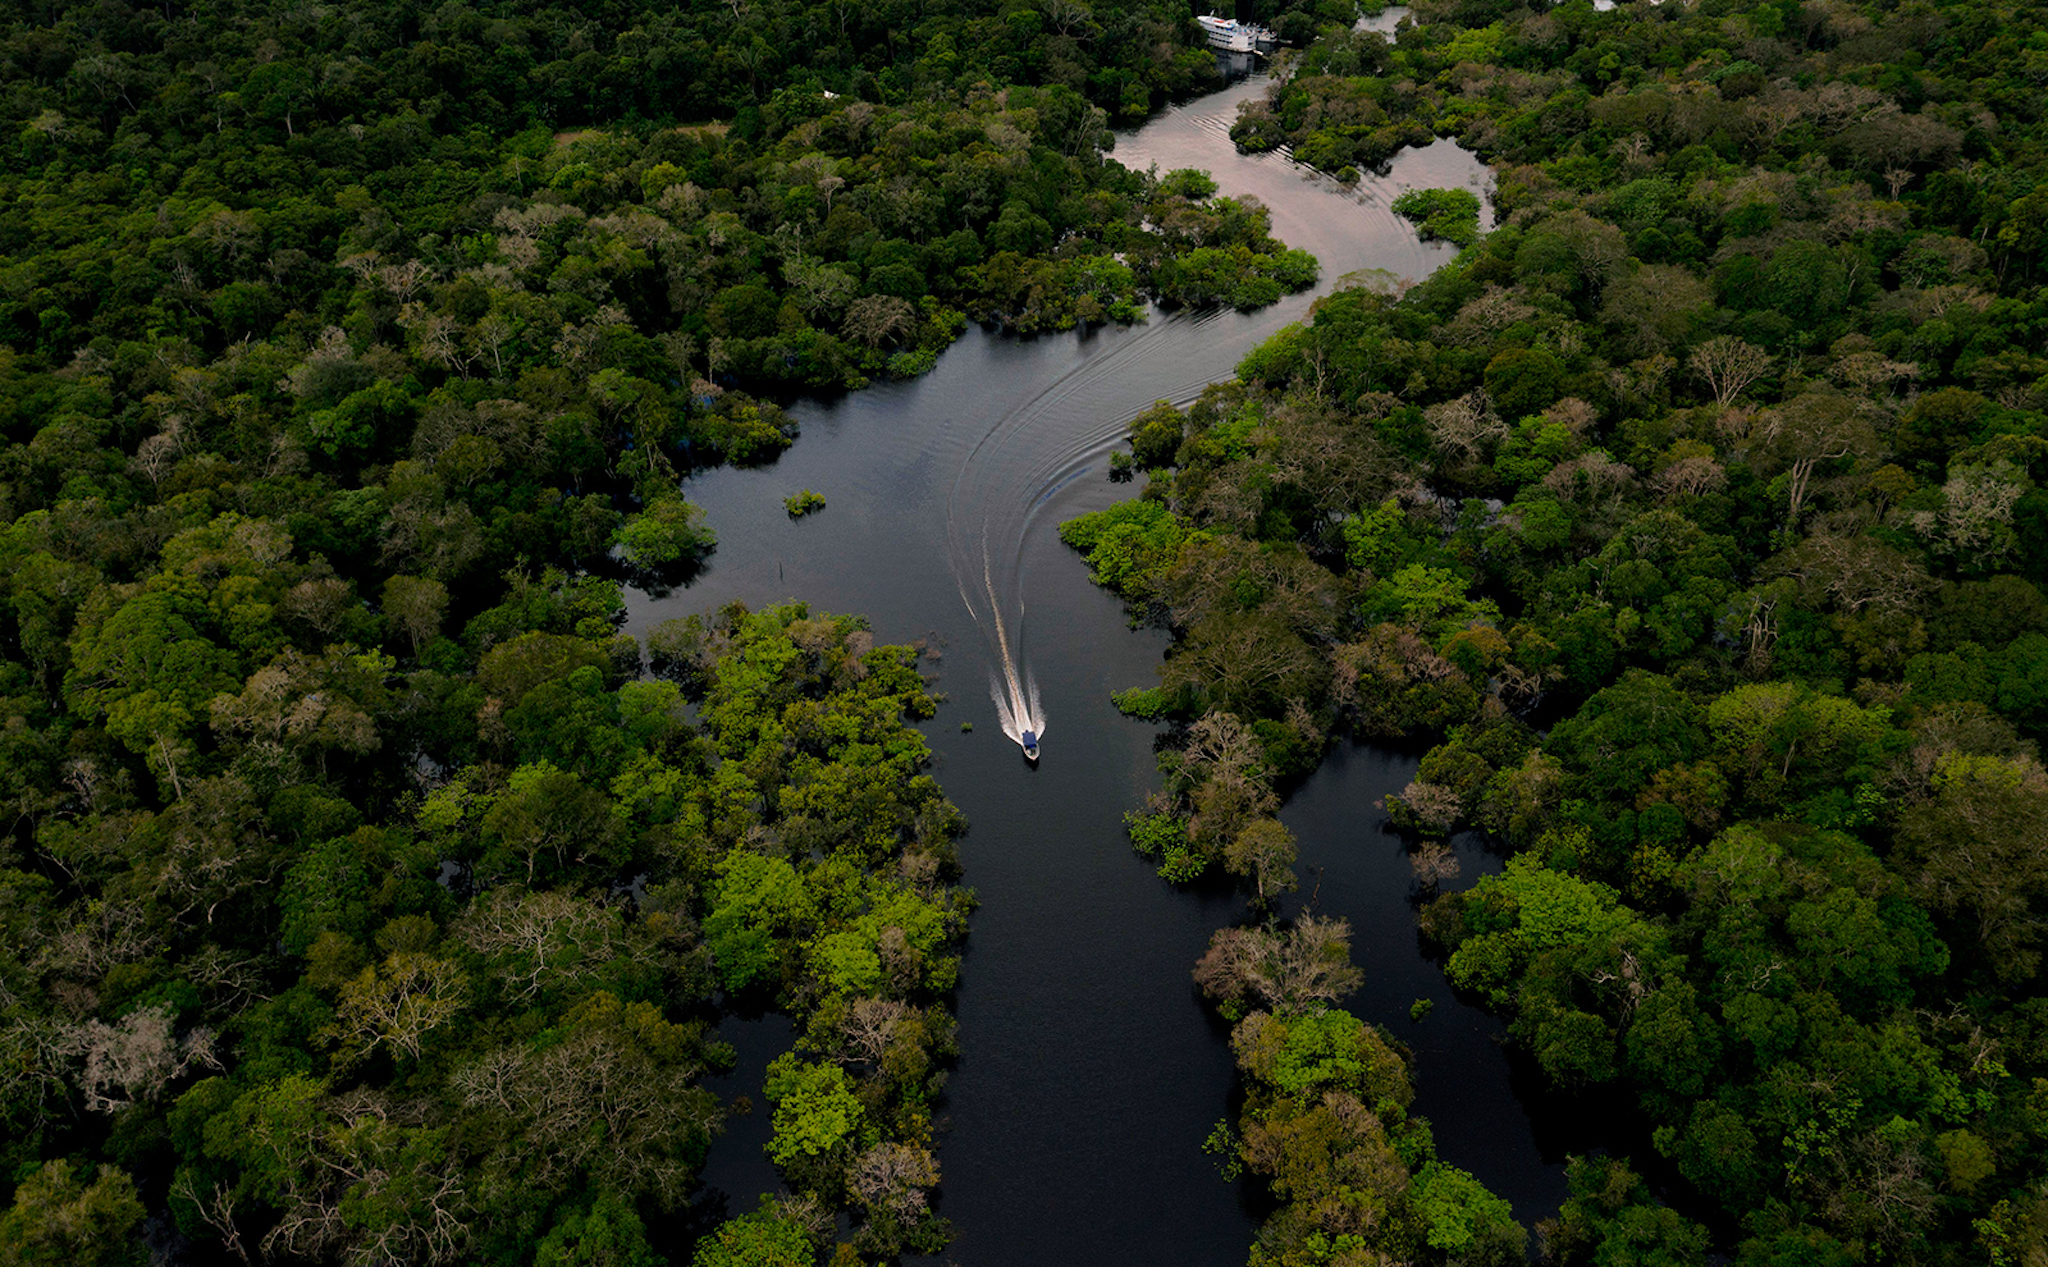 Biến đổi khí hậu, rừng nhiệt đới Amazon sắp trở thành thảo nguyên cỏ